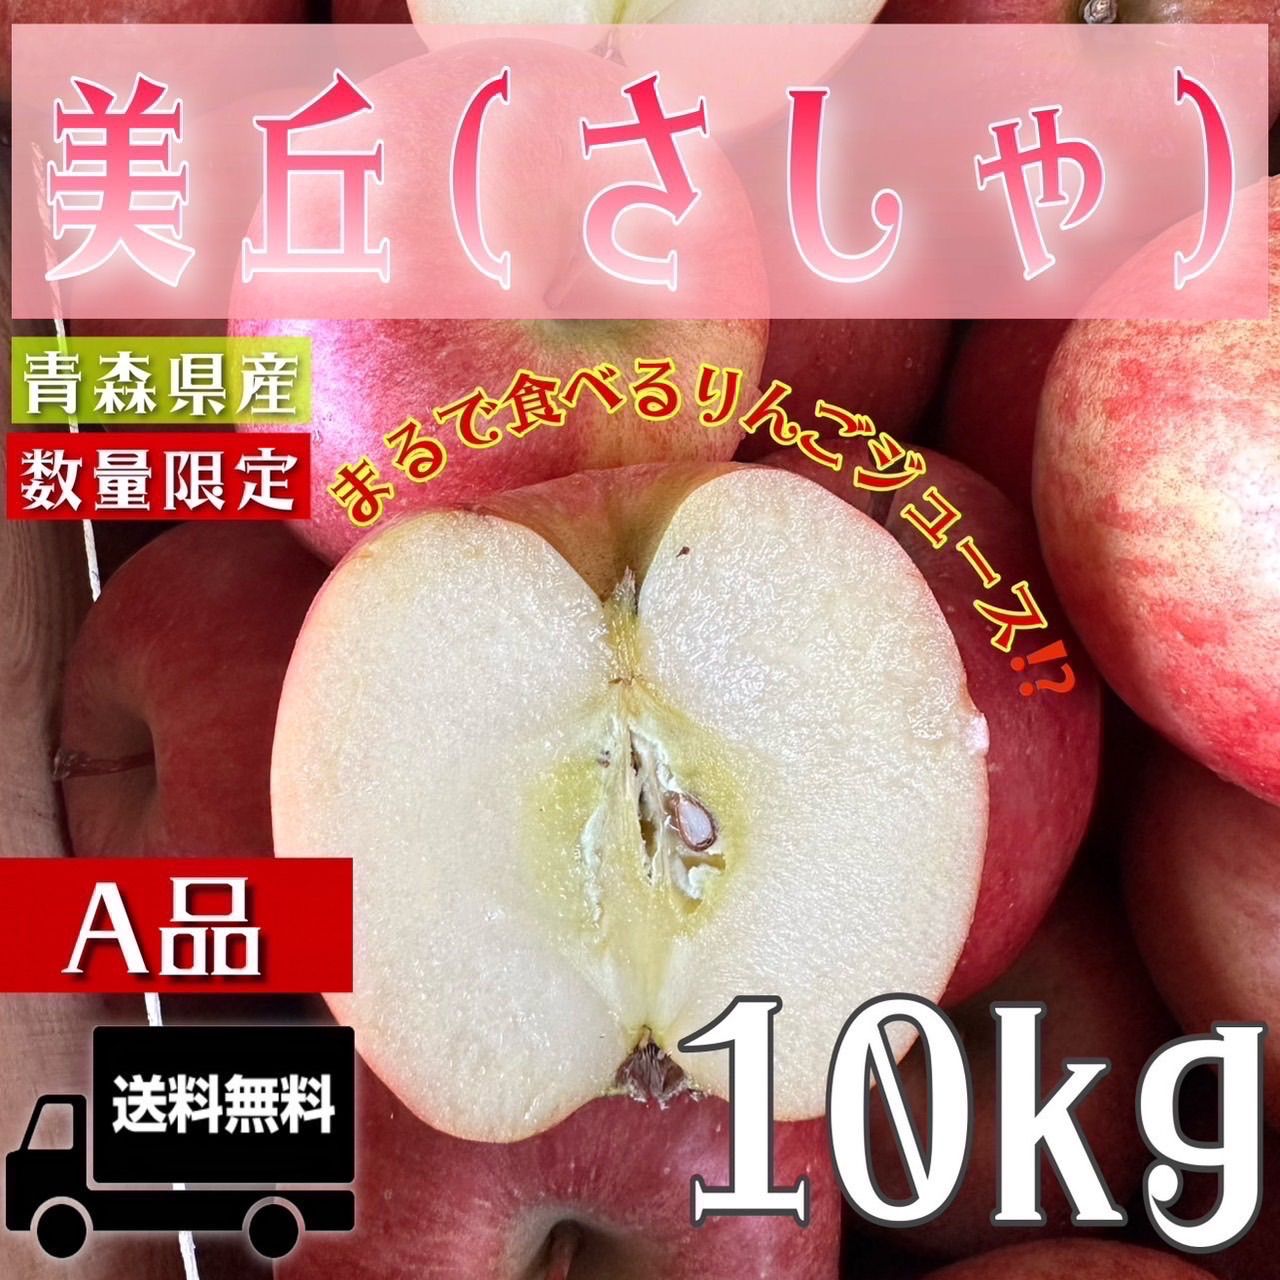 百花千果青森県産  はるか  りんご  家庭用  10kg  産地直送  リンゴ  林檎